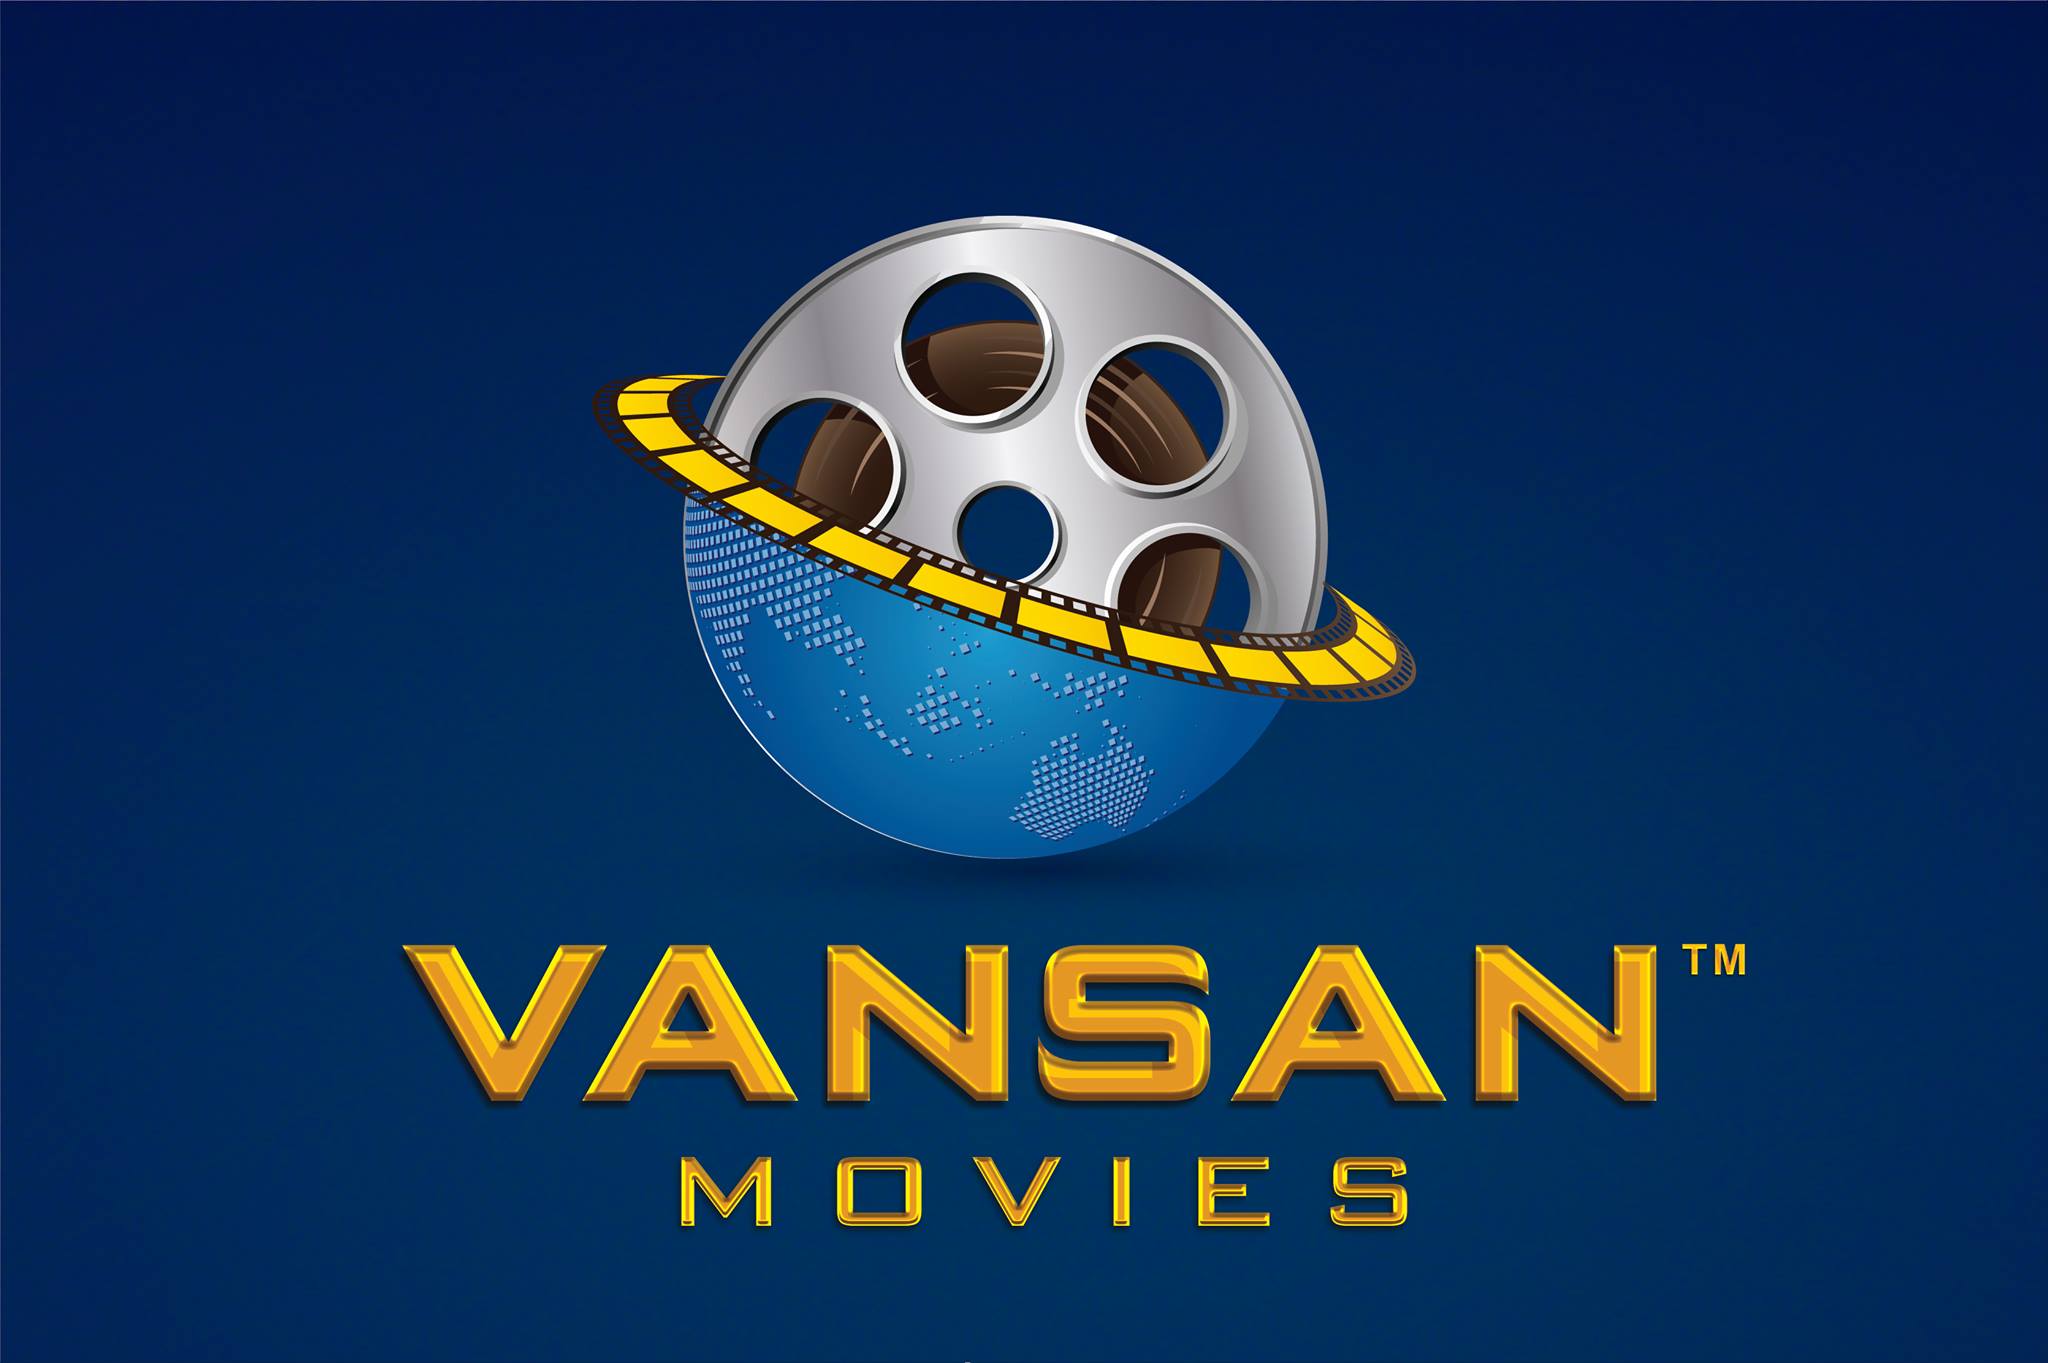 Vansan Movies